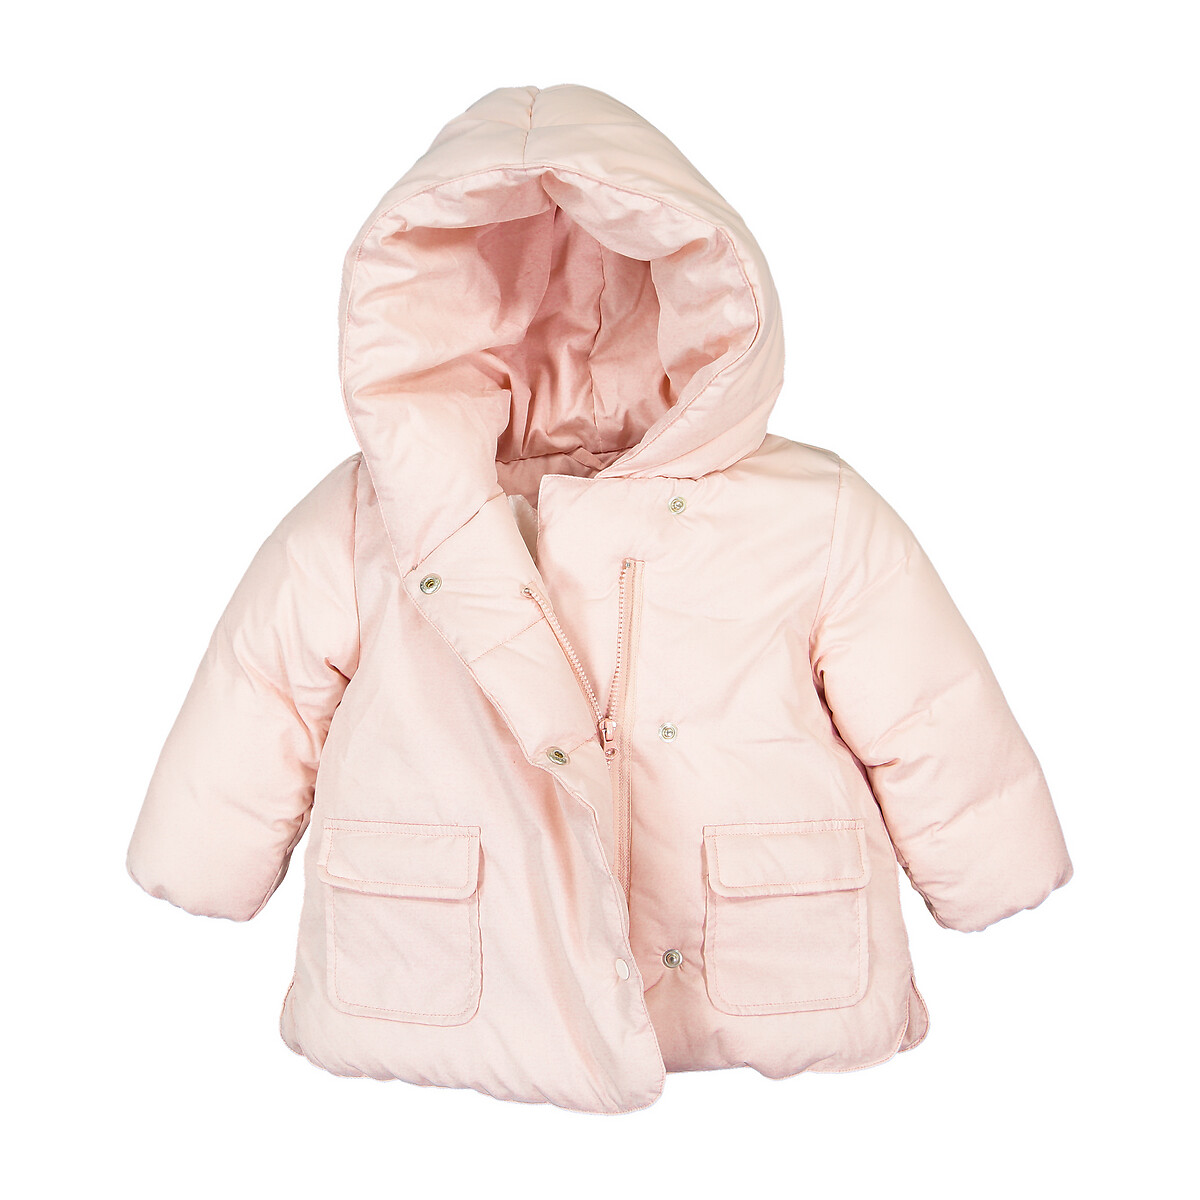 Куртка La Redoute Стеганая утепленная с капюшоном 3 мес-4 года 6 мес. - 67 см розовый, размер 6 мес. - 67 см - фото 2